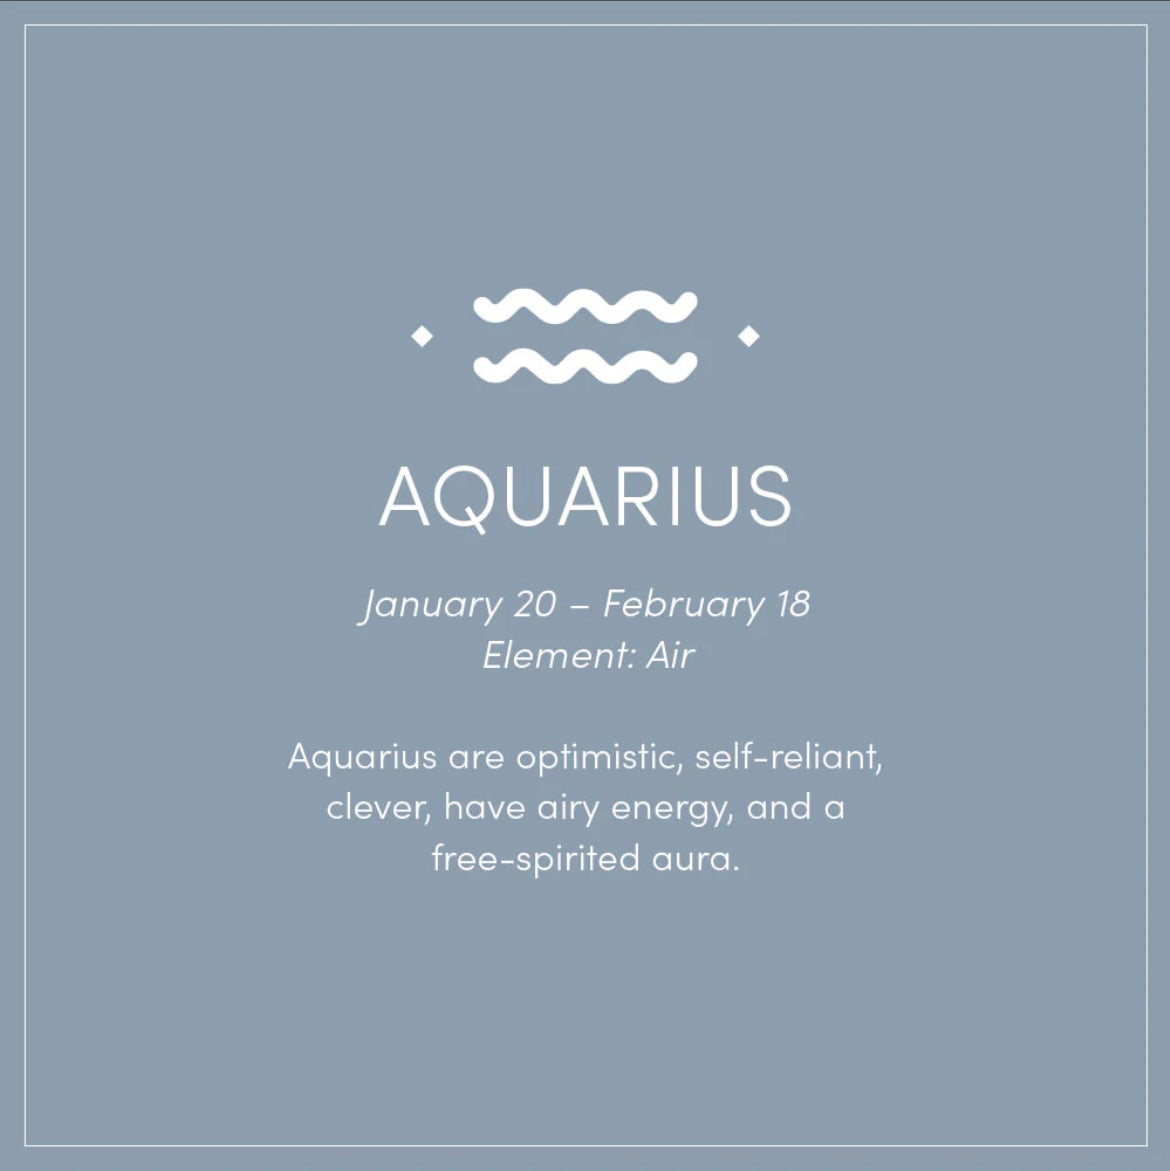 Grande Square - Aquarius